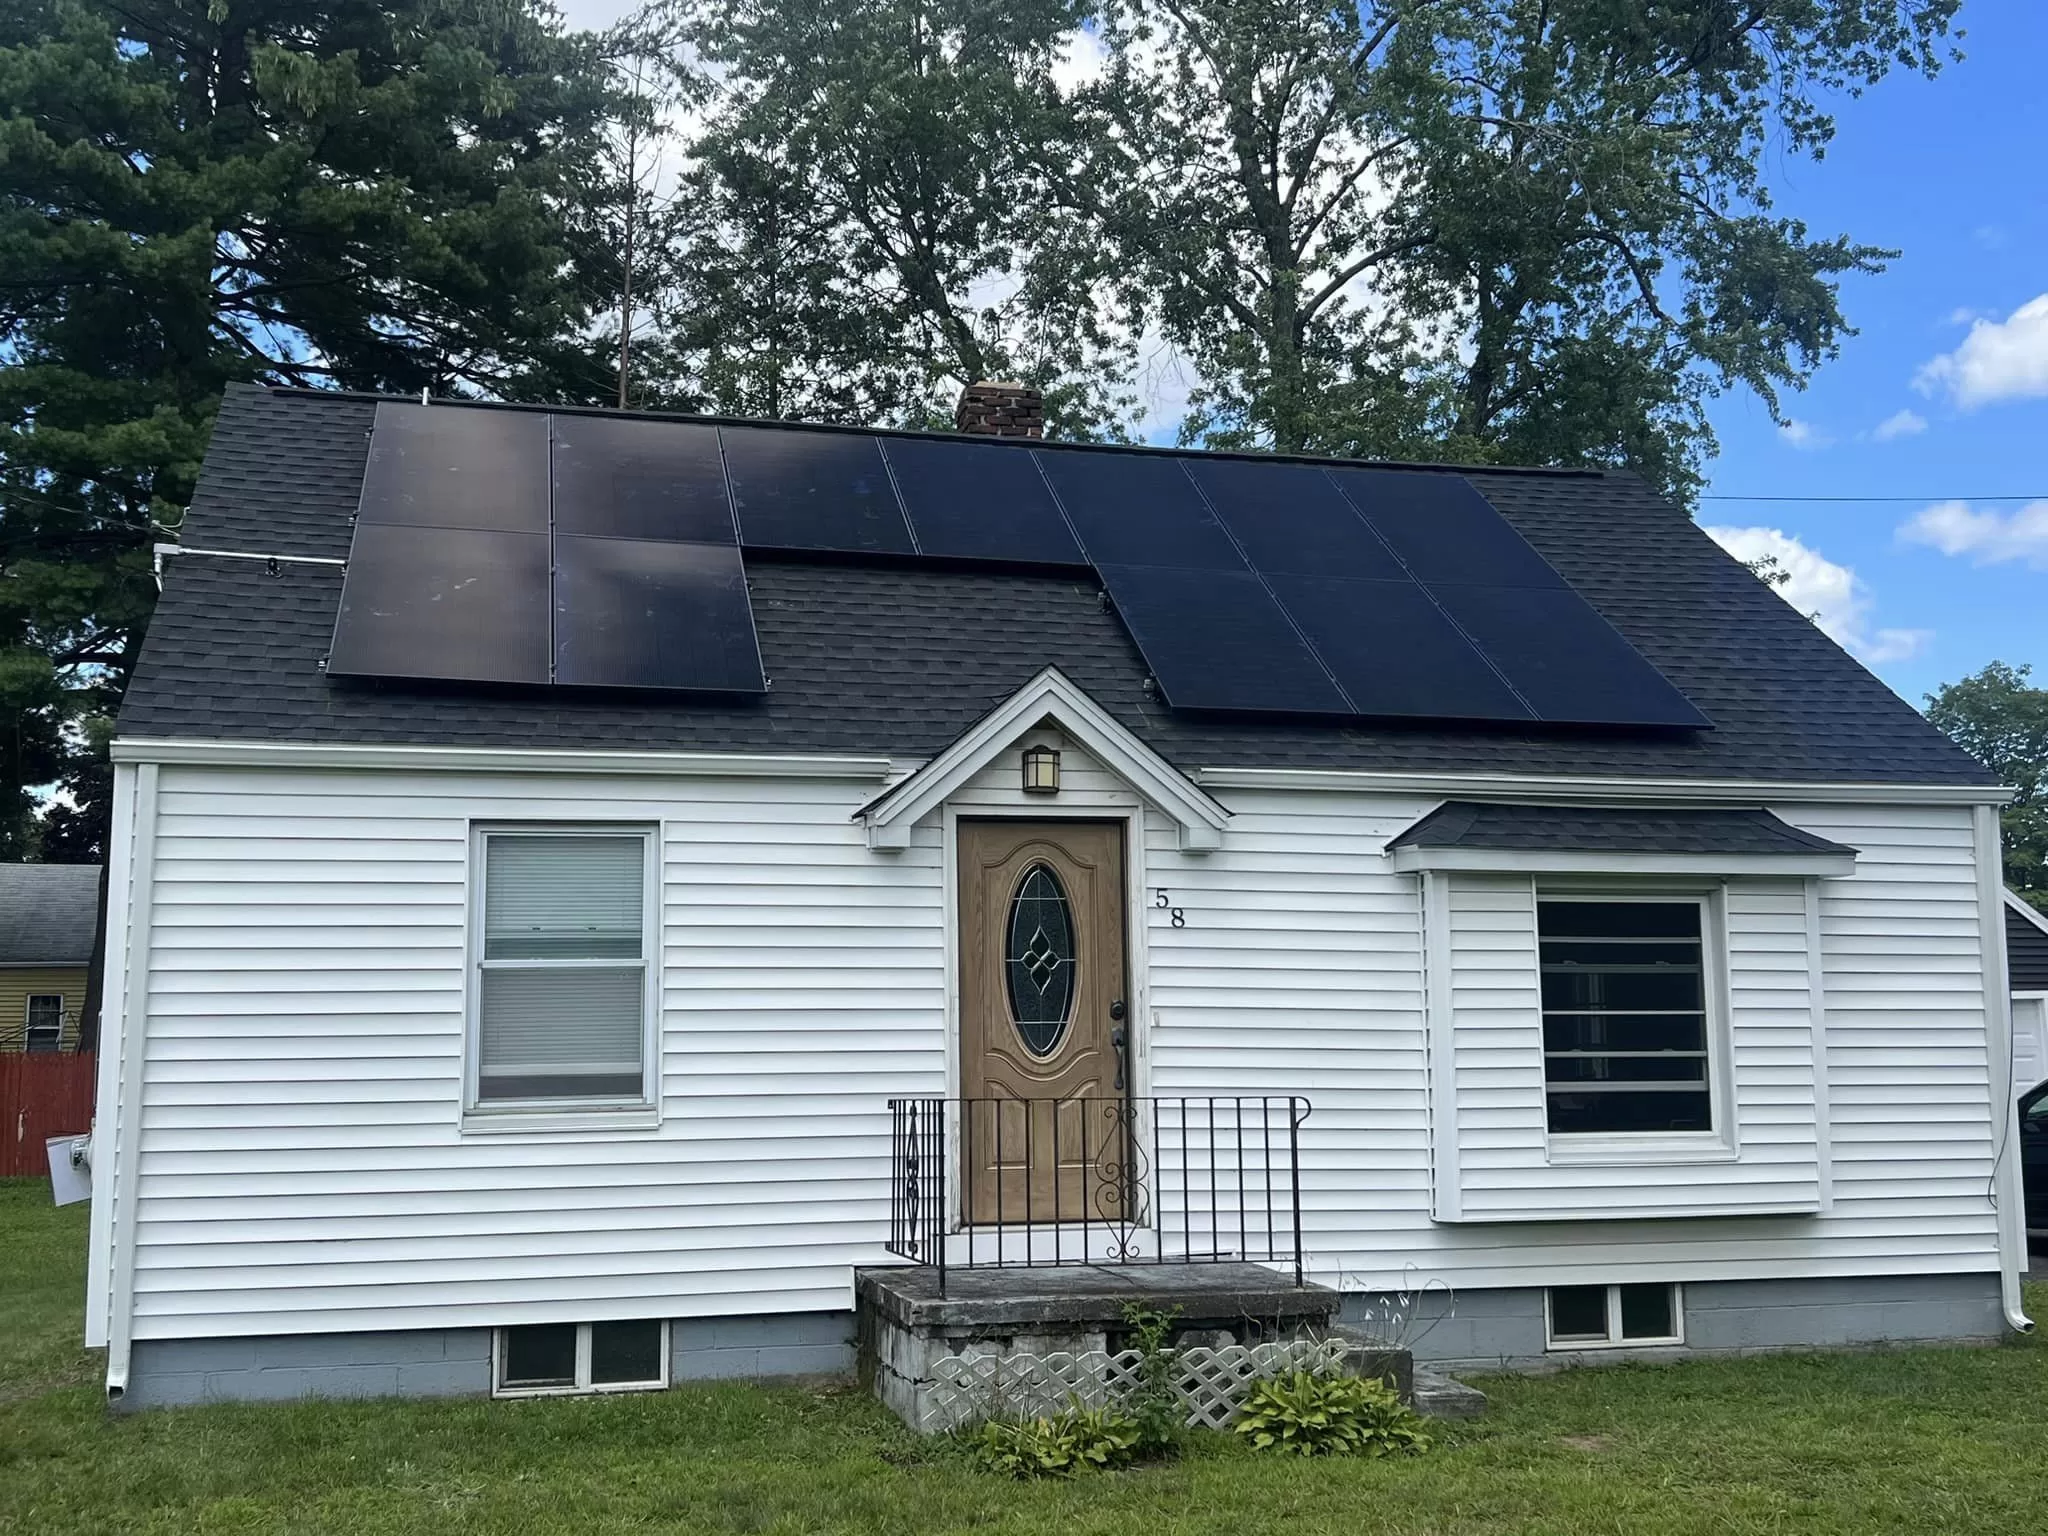 sistema electrico solar para casas - Paneles Solares Bayshore